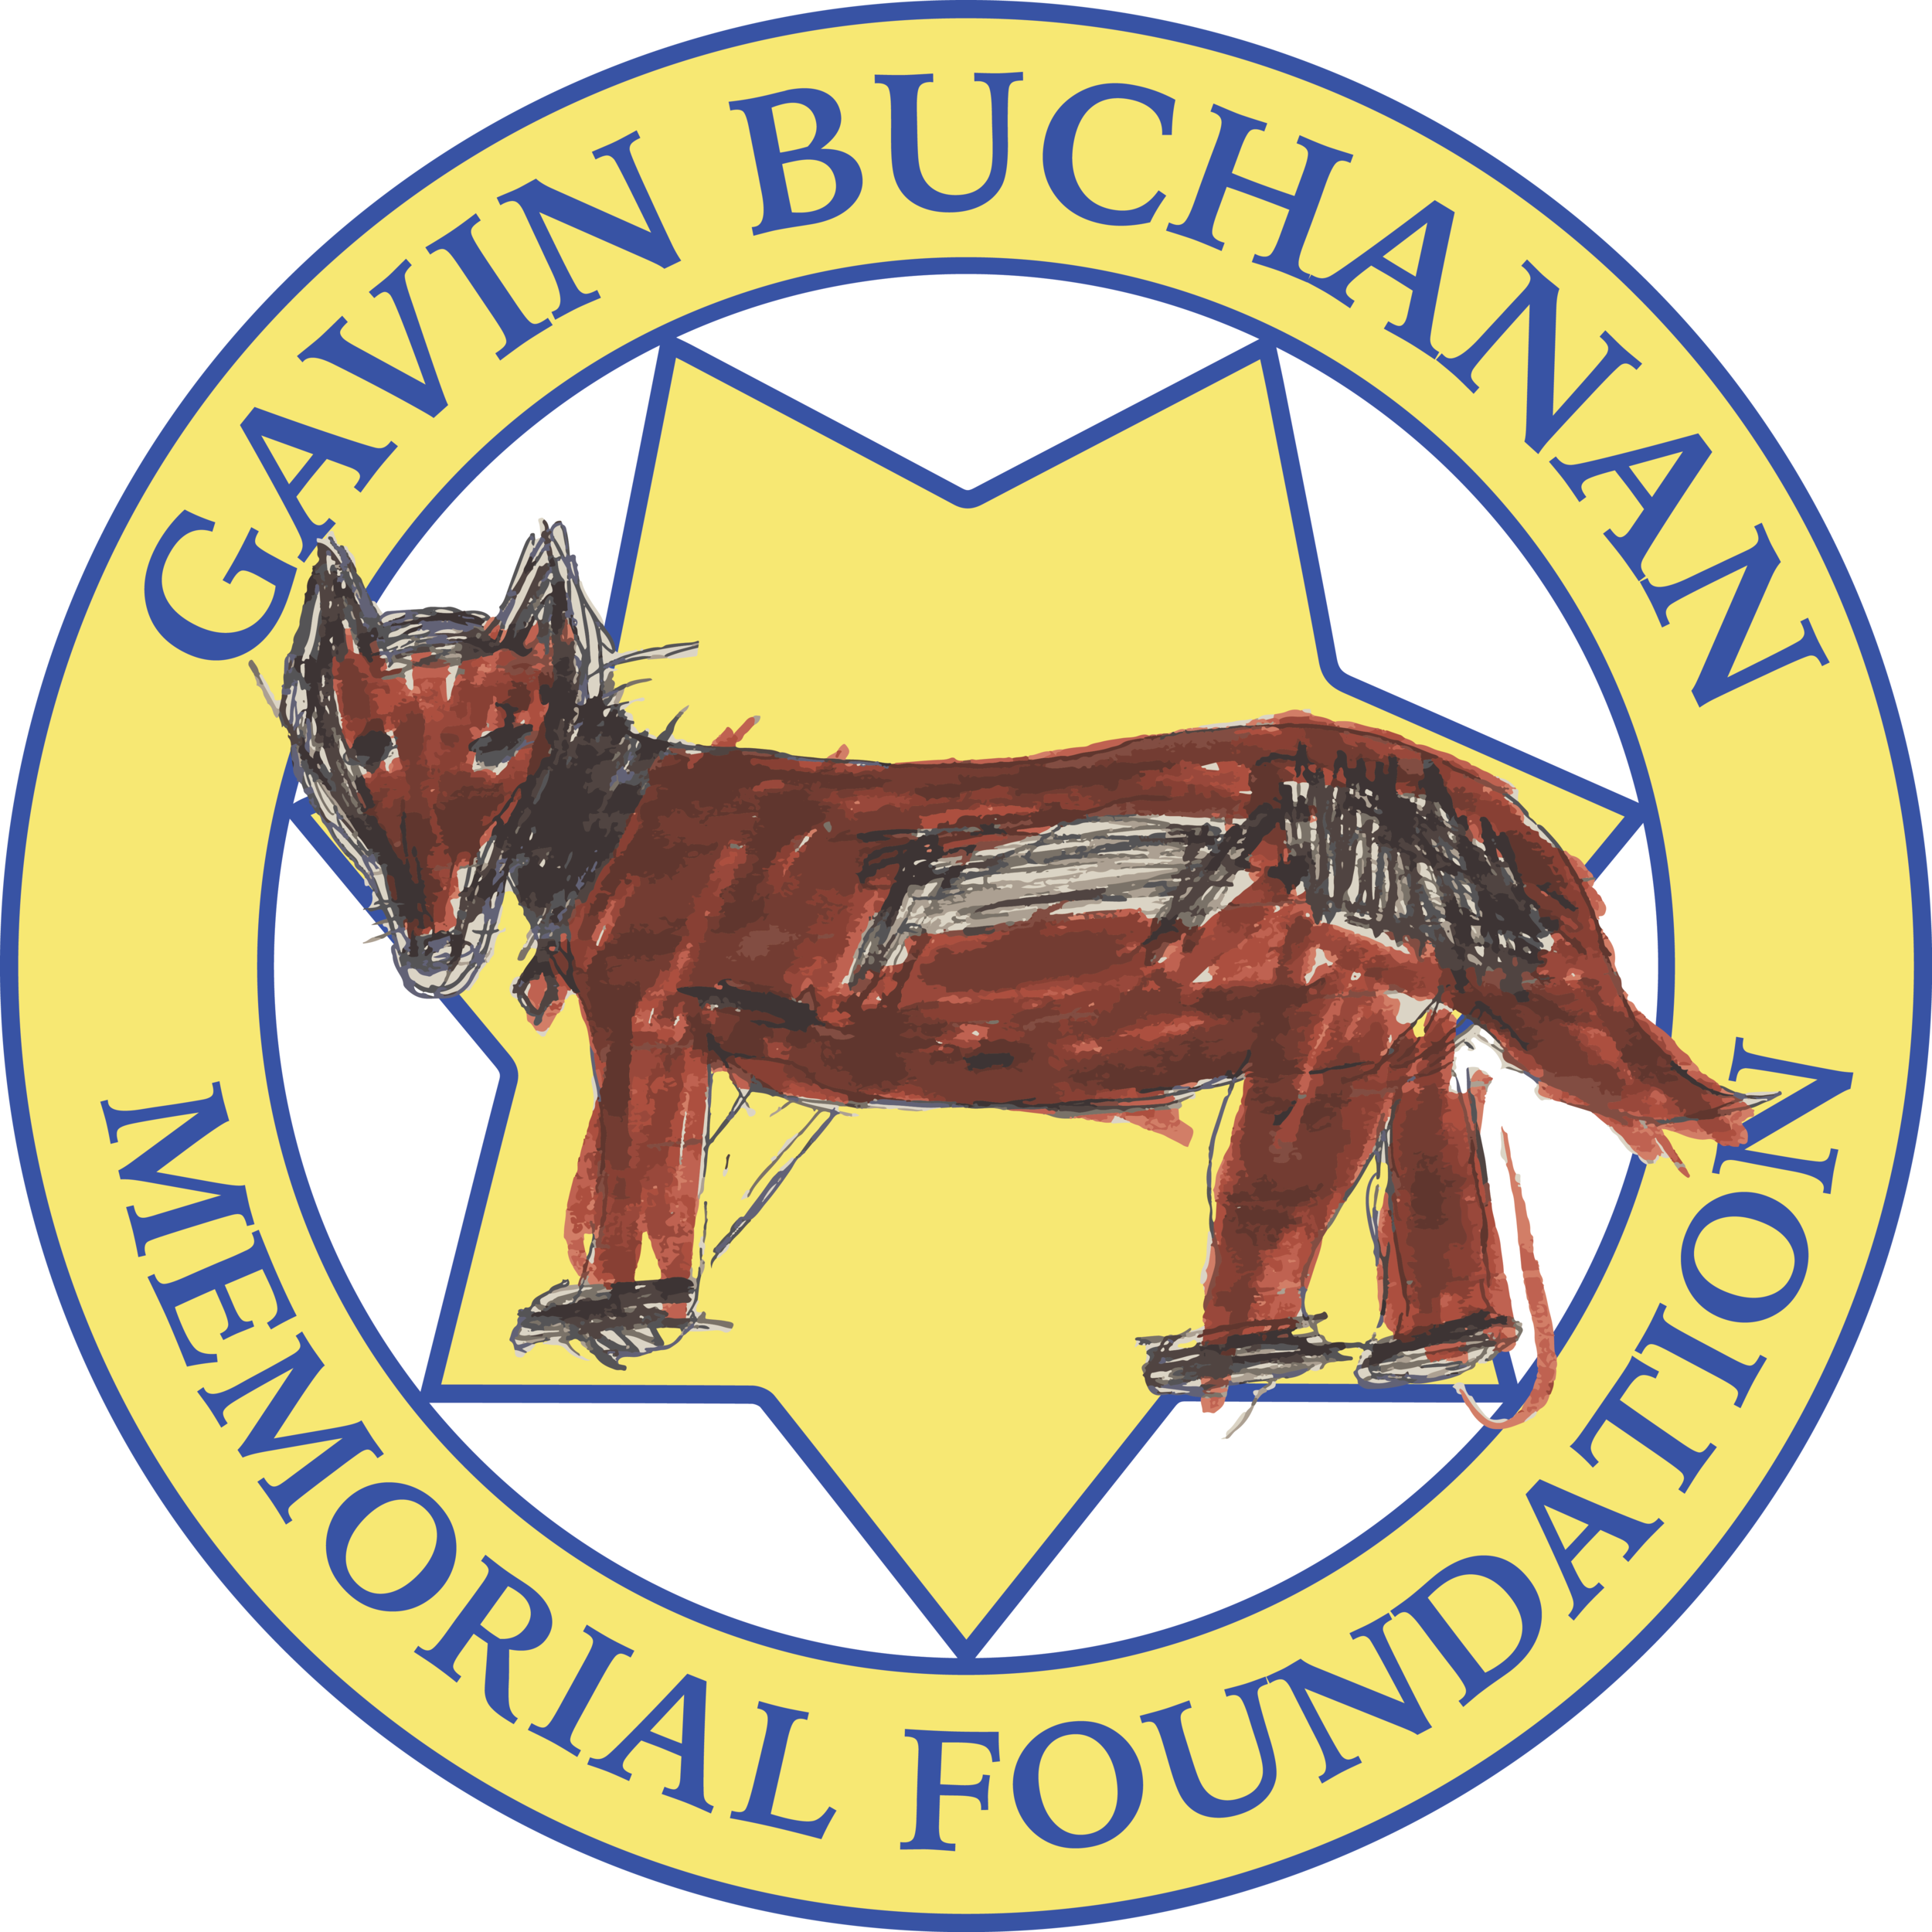 Gavin Buchanan Memorial Foundation